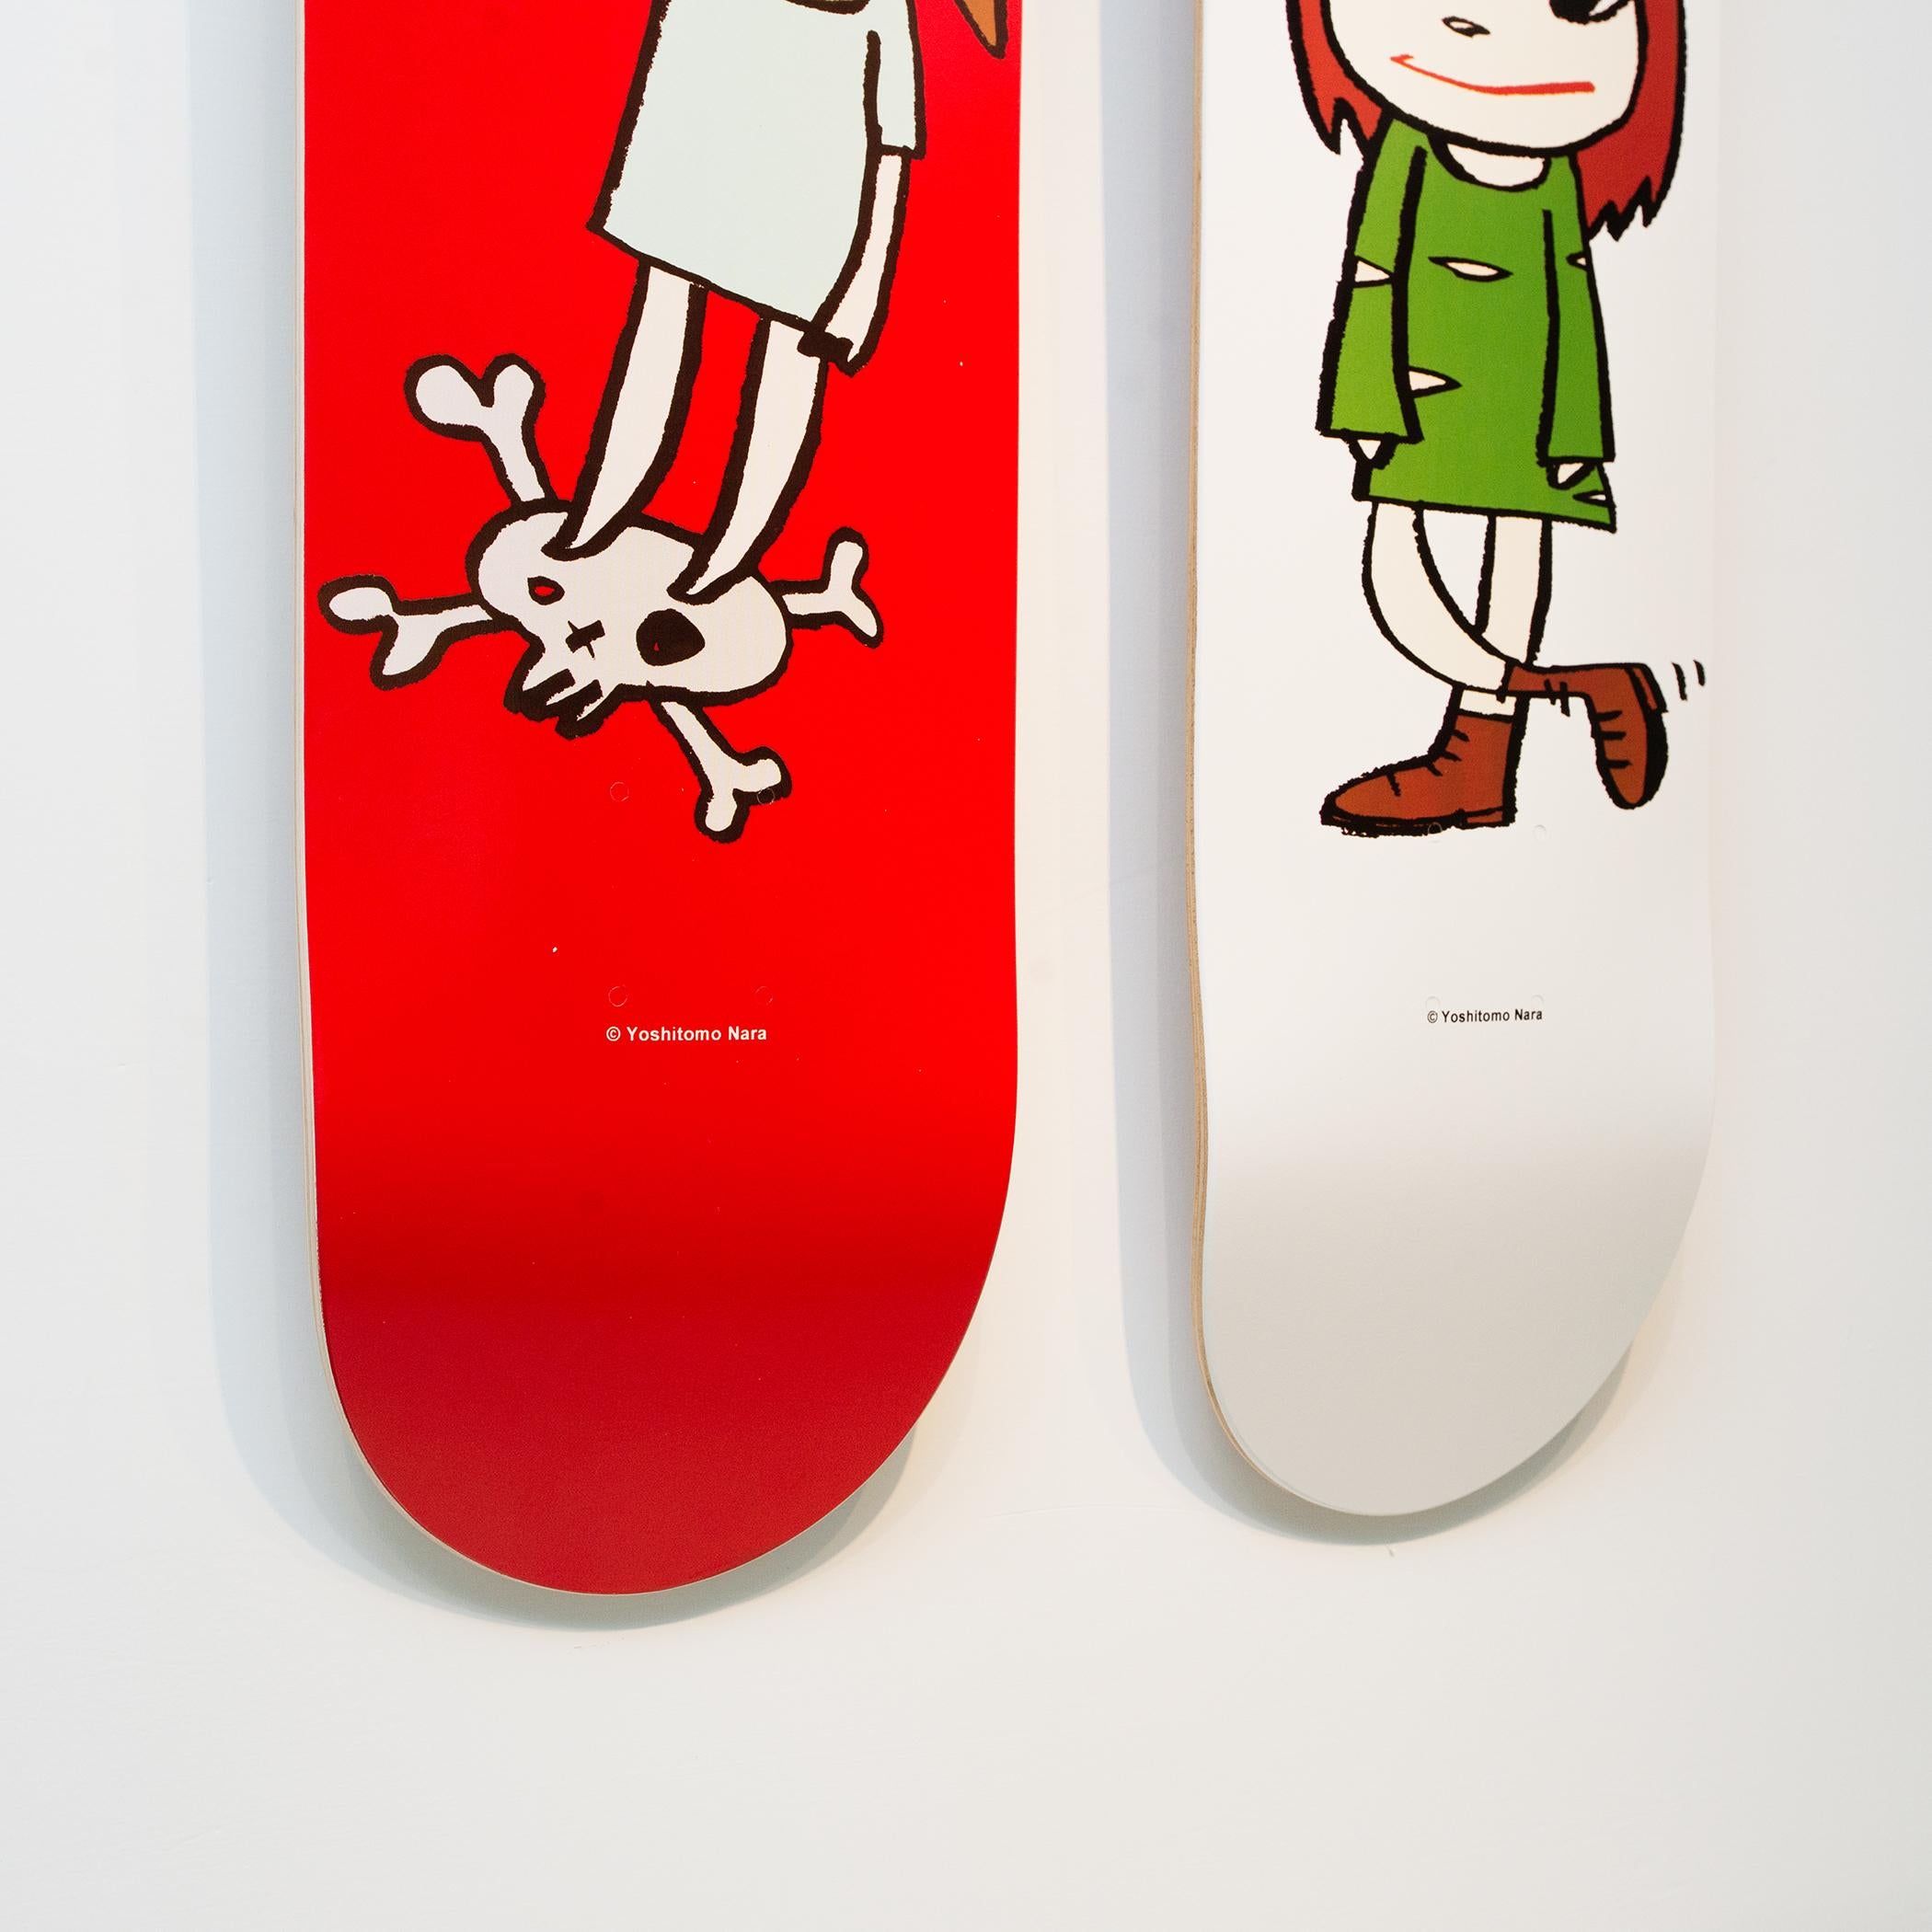 yoshitomo nara skateboard